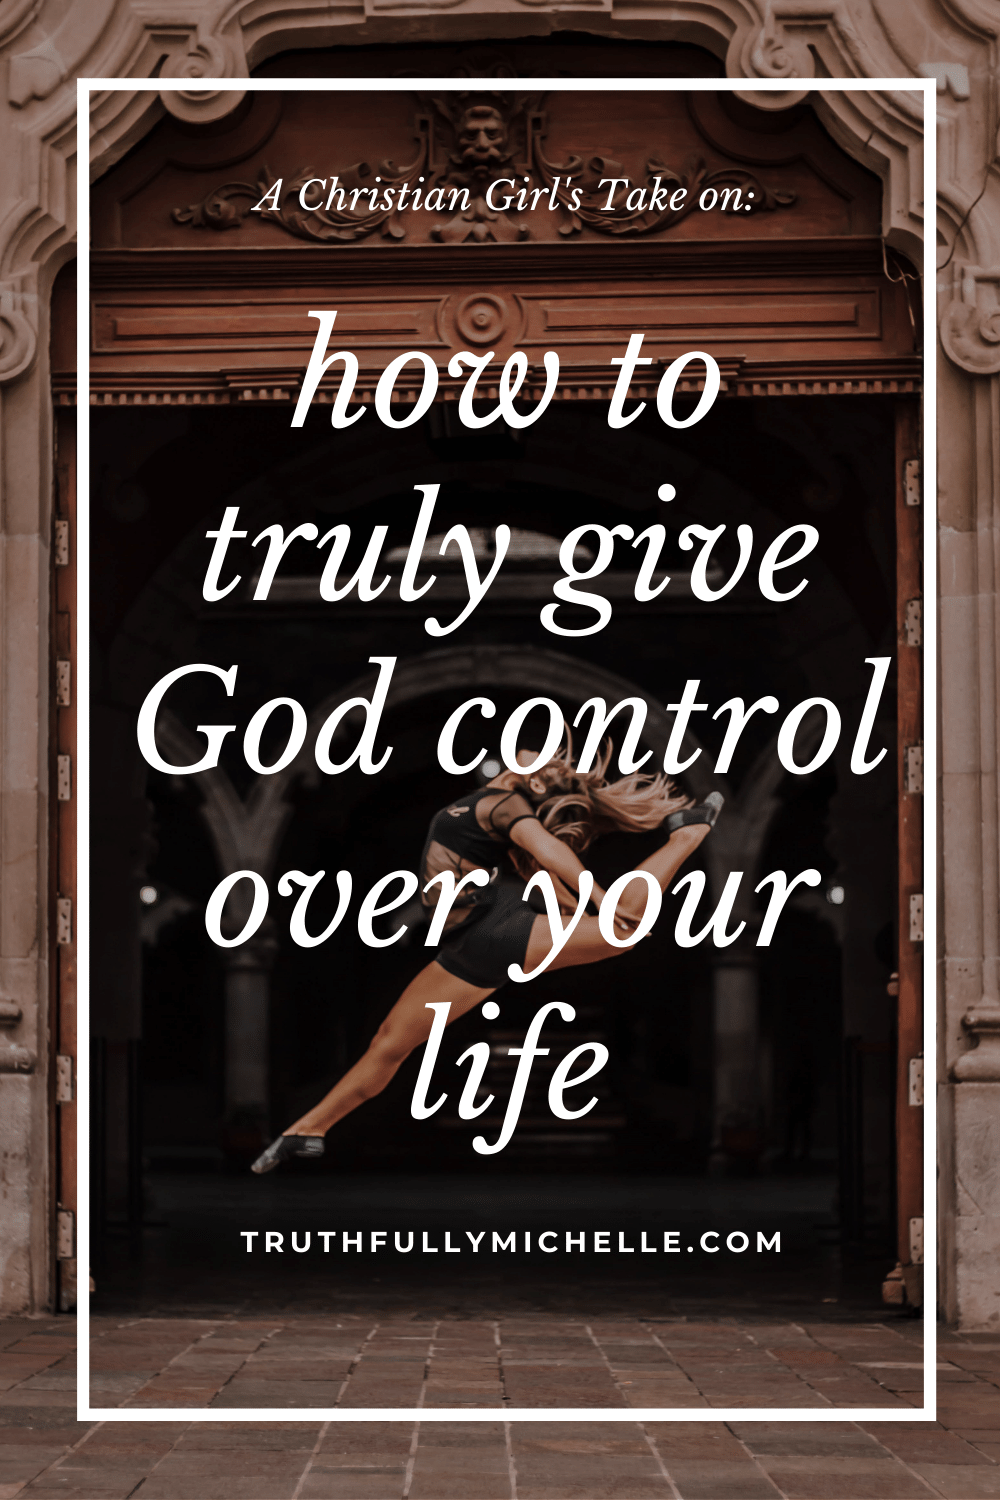 nechat jít a nechat Boha převzít kontrolu, jak nechat Boha převzít kontrolu nad vaším životem, když necháte Boha převzít kontrolu, umožnit Bohu vést, vzdát se kontroly Bohu, nechat Boha ovládat váš život, umožnit Bohu převzít kontrolu, jak dát Bohu kontrolu, Bůh ovládá můj život a osud, jak mít víru v Boha úplně, jak nechat Boha převzít kontrolu, jak plně důvěřovat Bohu, jak důvěřovat Bohu v těžkých dobách duchovní inspirace a povzbuzení